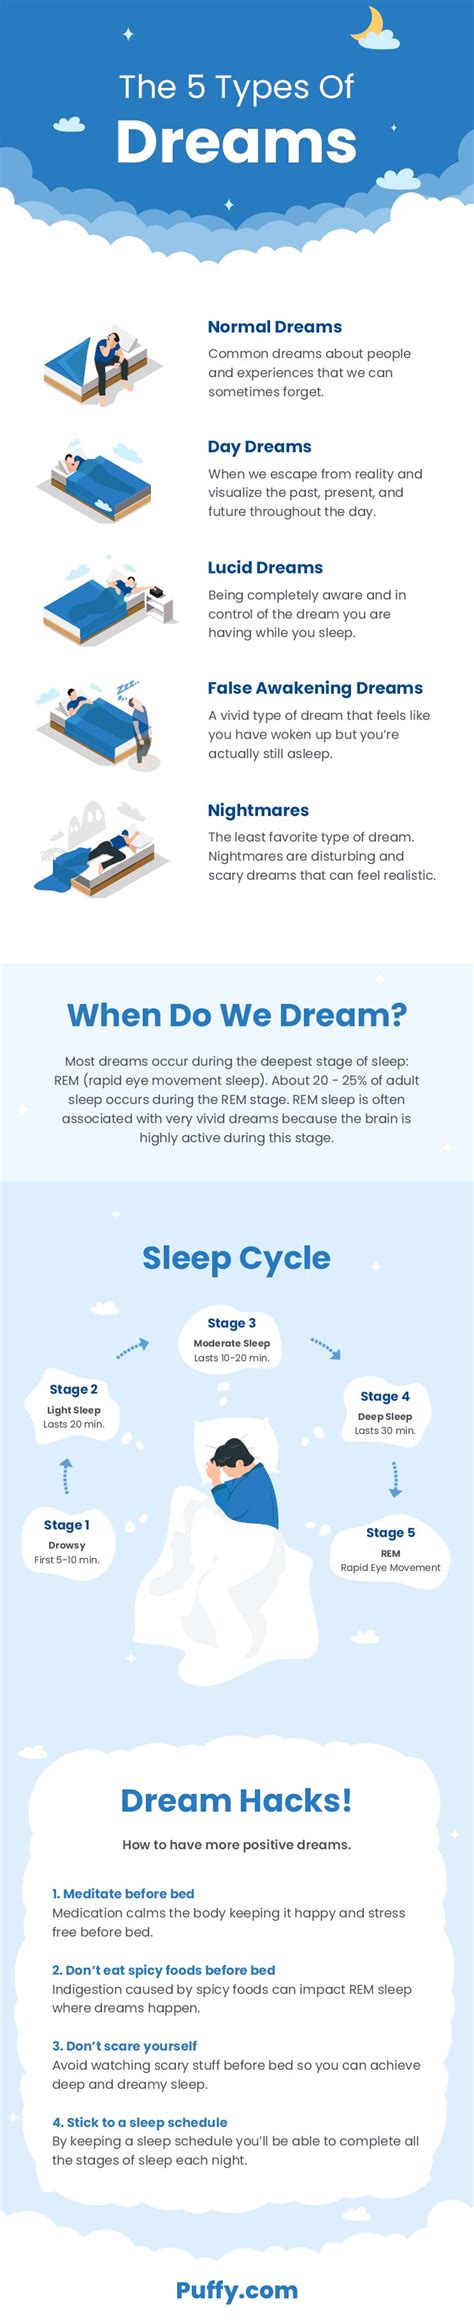 梦的五种类型